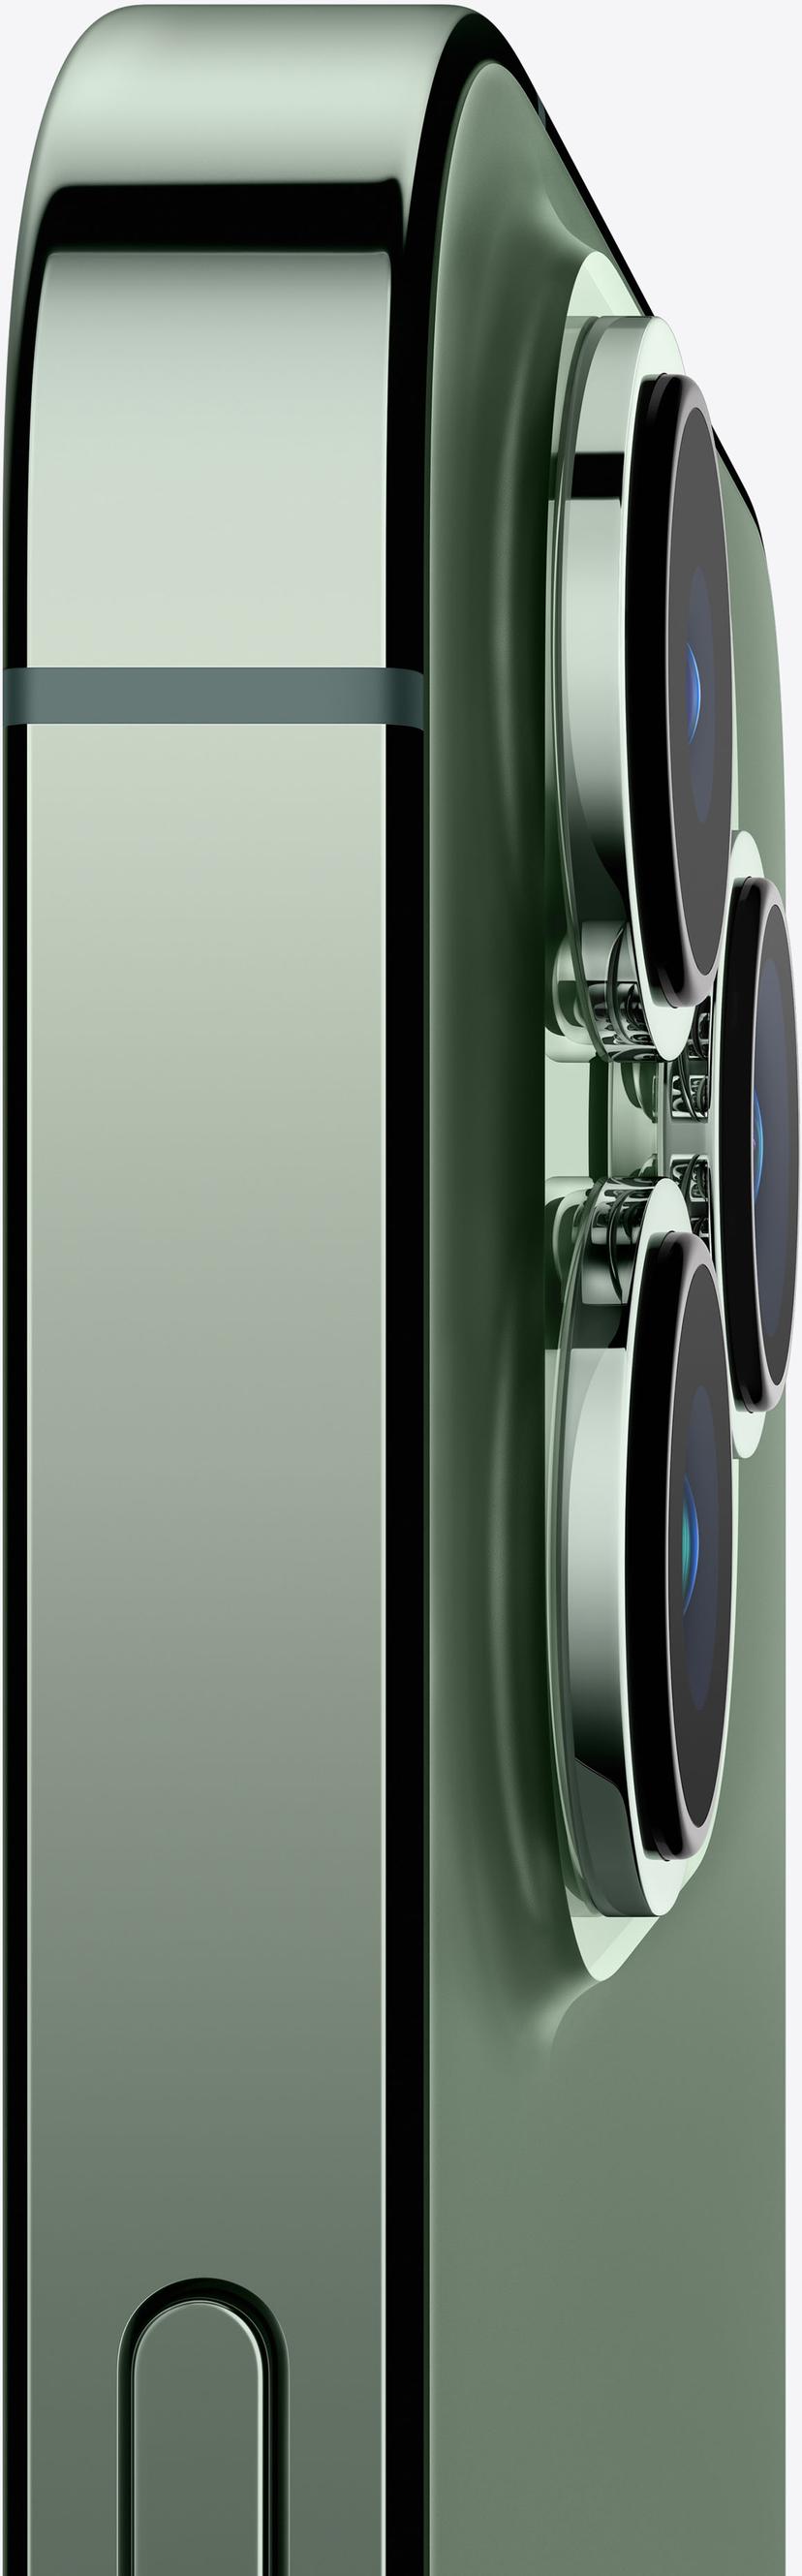 Apple iPhone 13 Pro 256GB Alppien vihreä